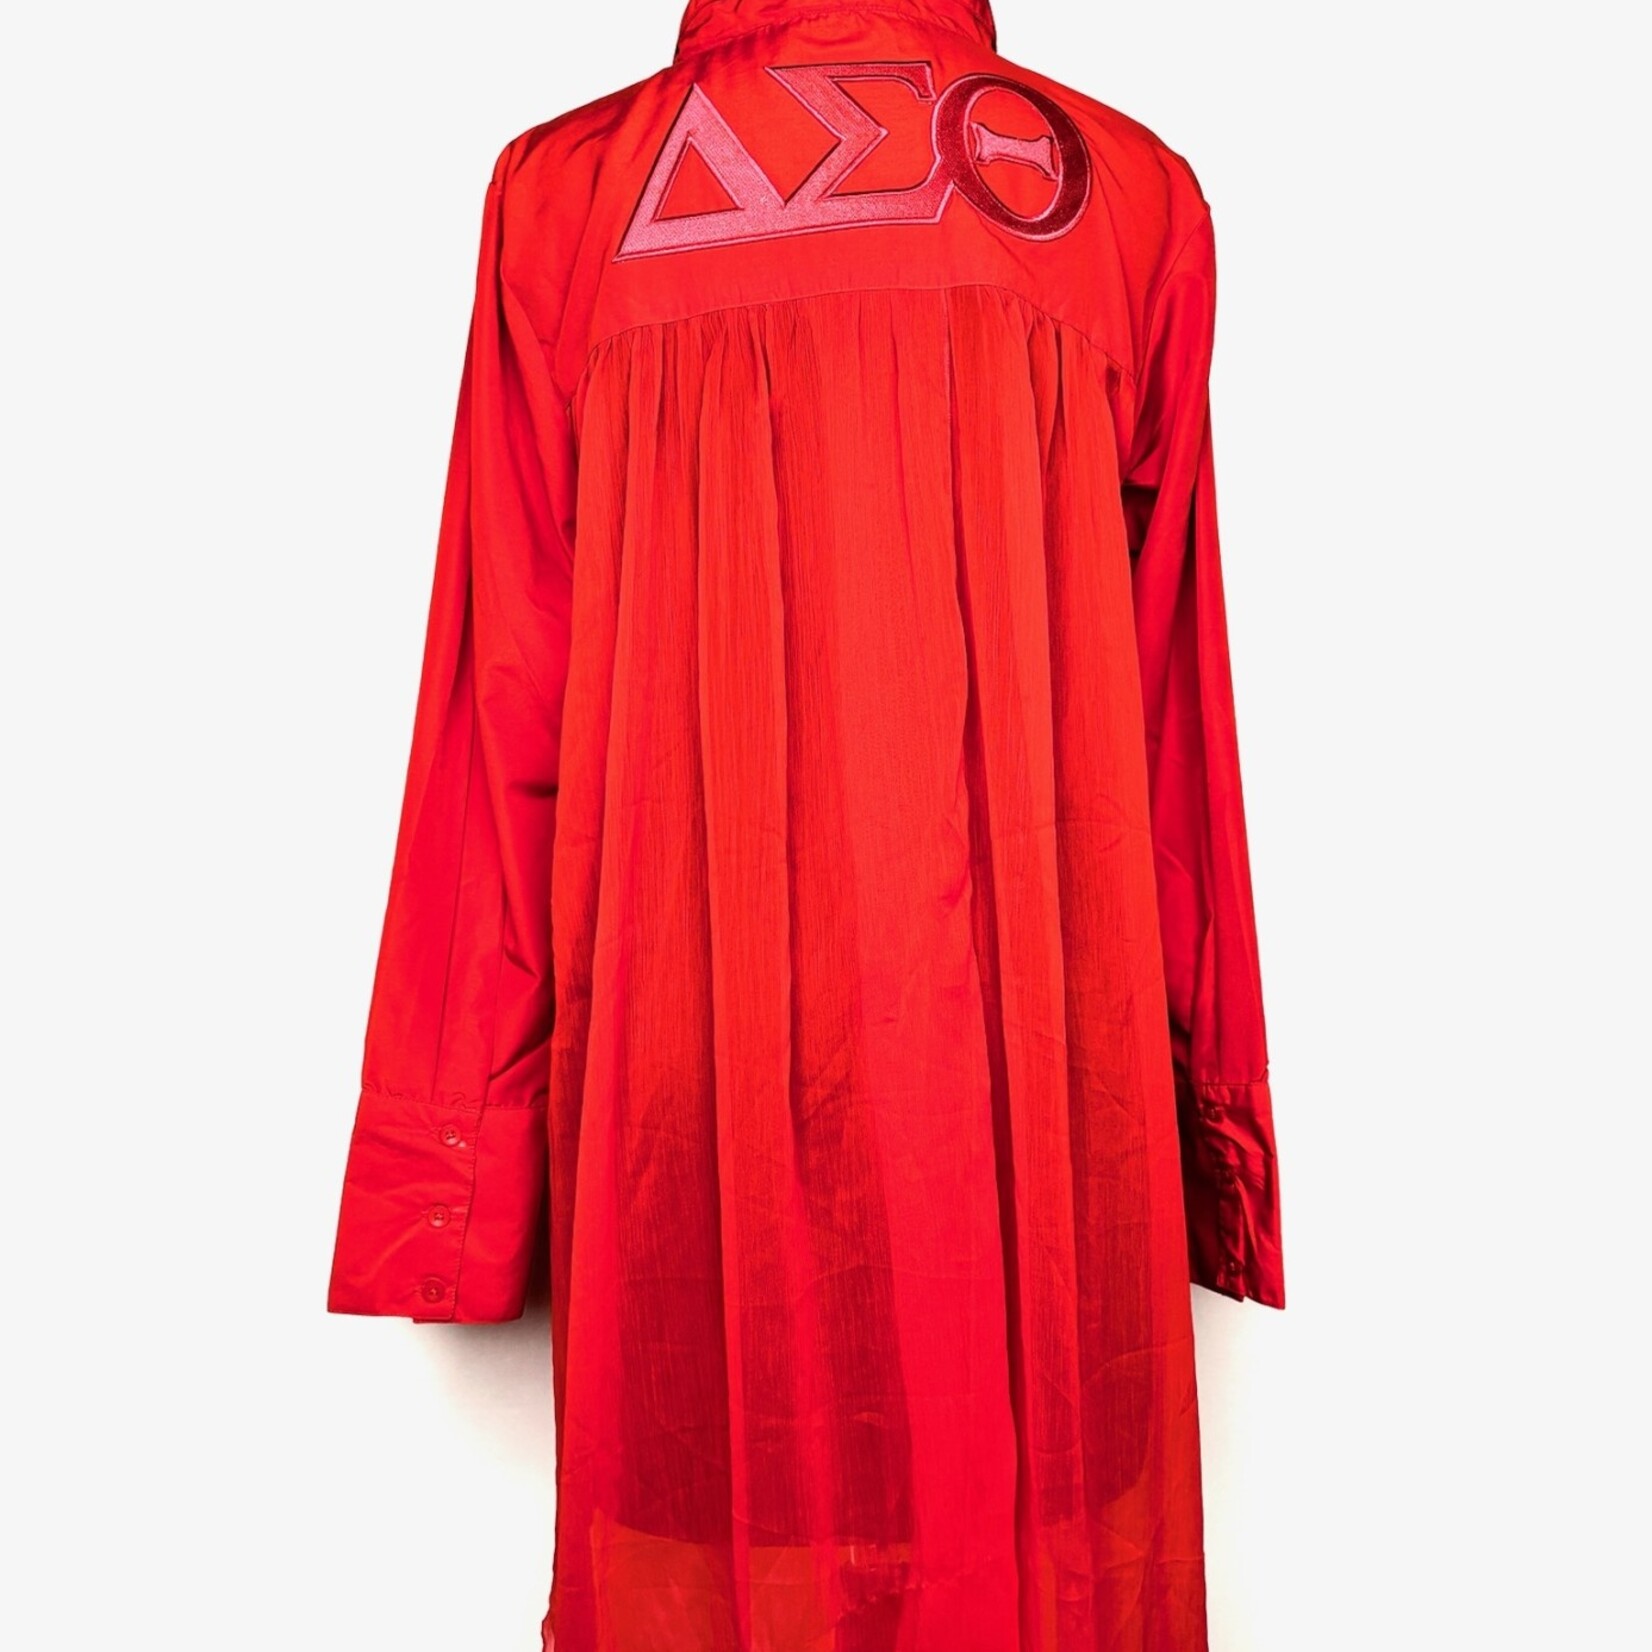 ΔΣΘ DST Red Dress shirt with Chiffon Back